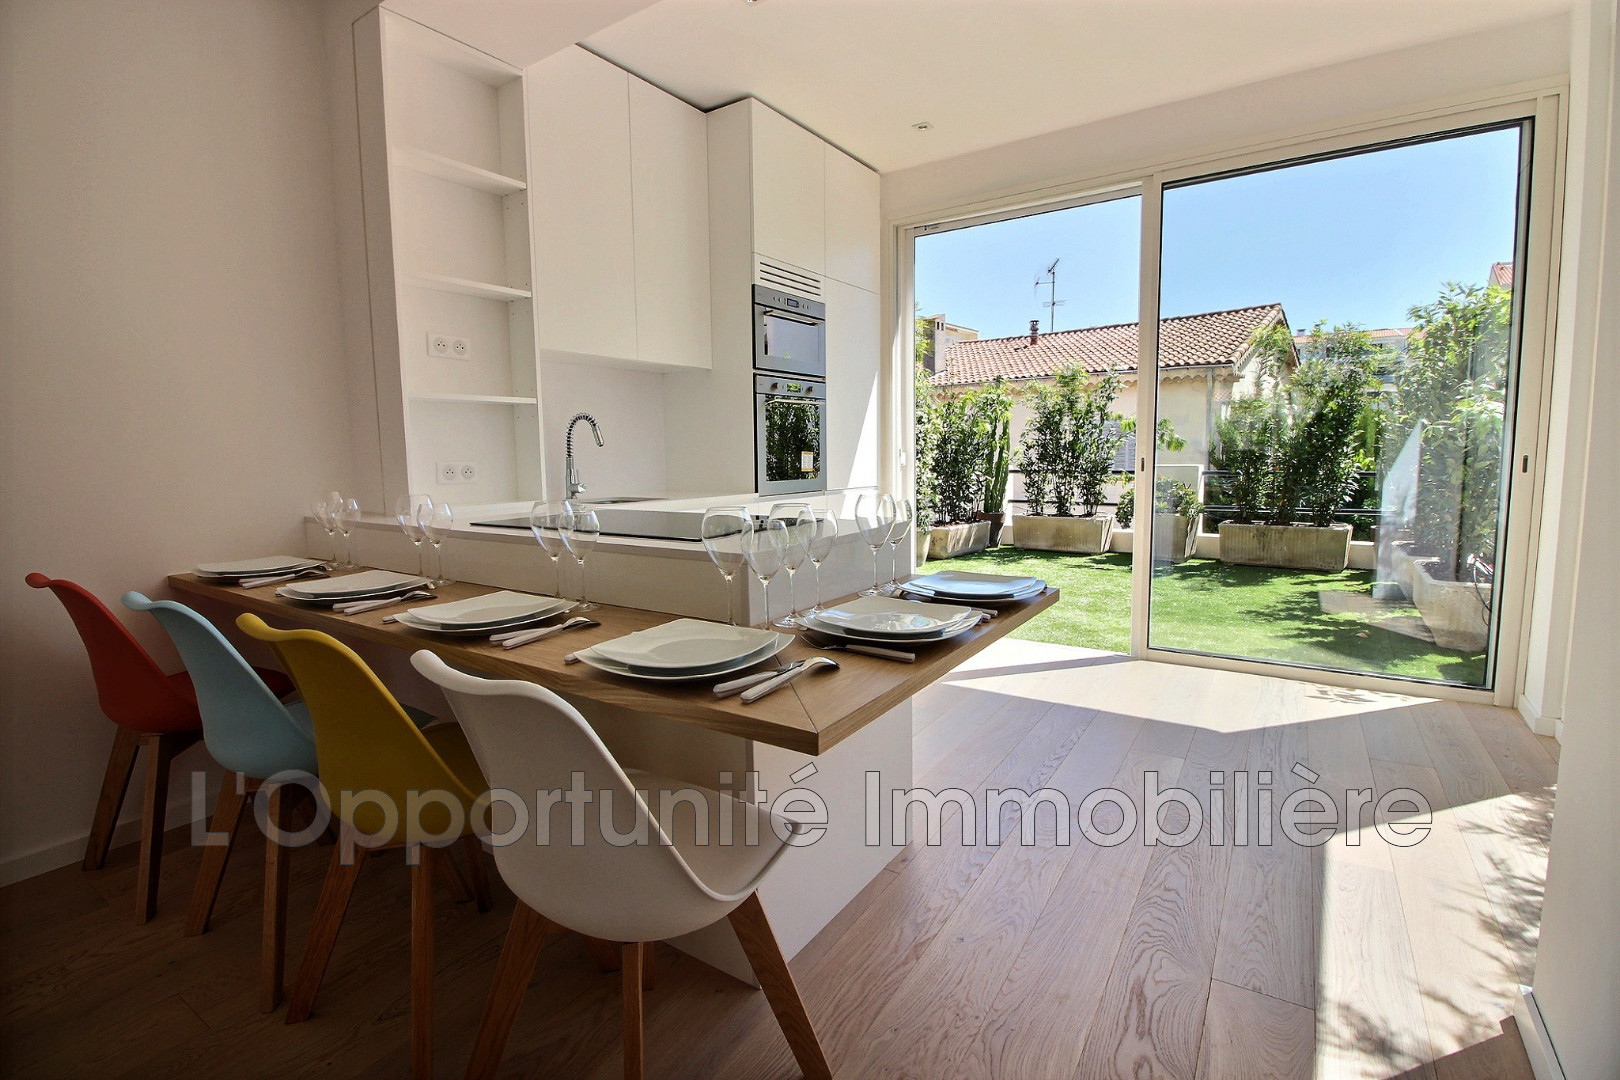 Vente Appartement 80m² 3 Pièces à Cannes (06400) - L'Opportunite Immobiliere